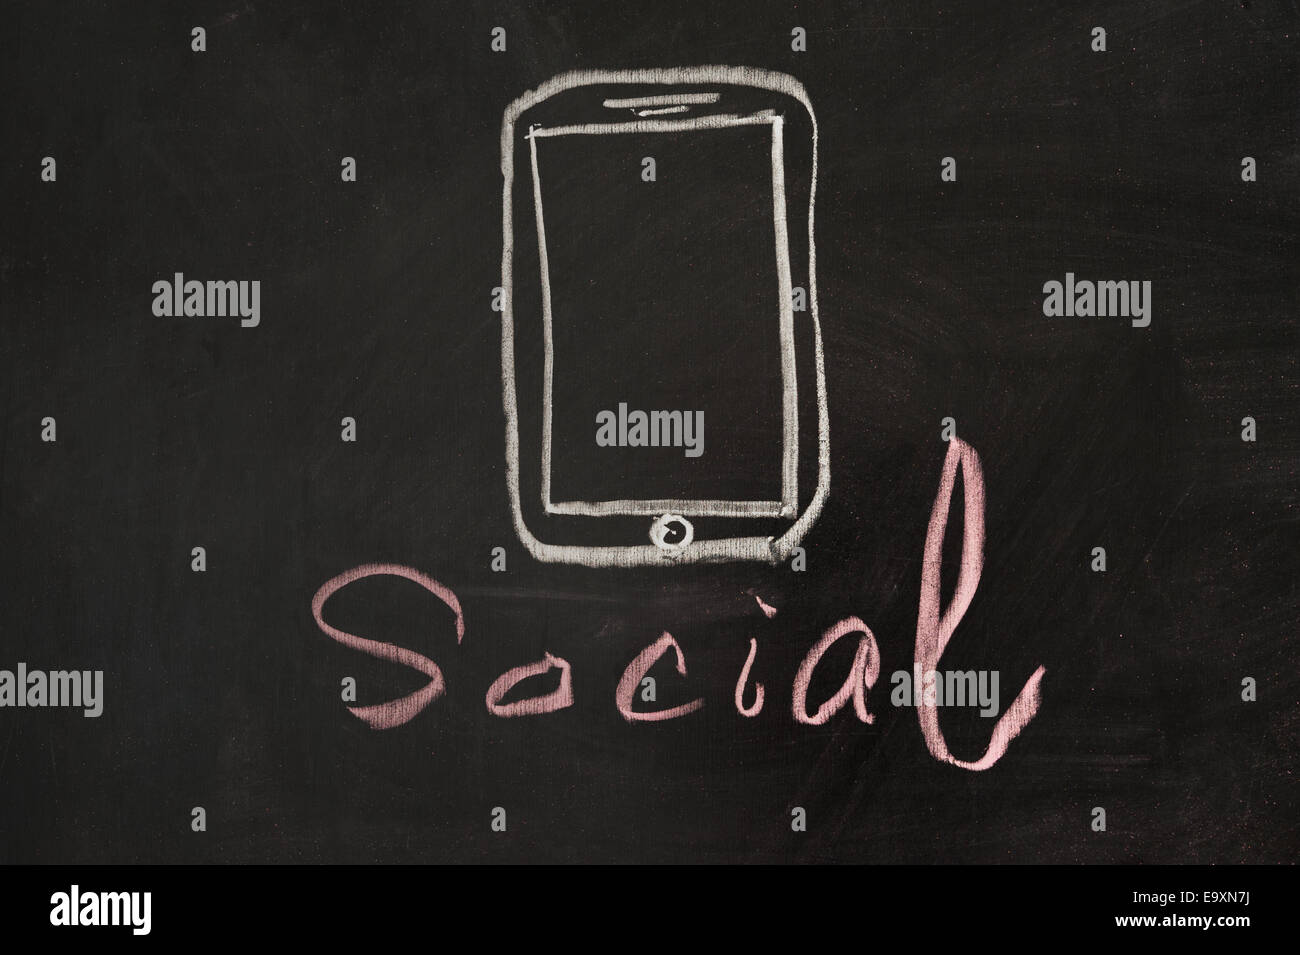 Mobile social media concept drawn on blackboard Stock Photo